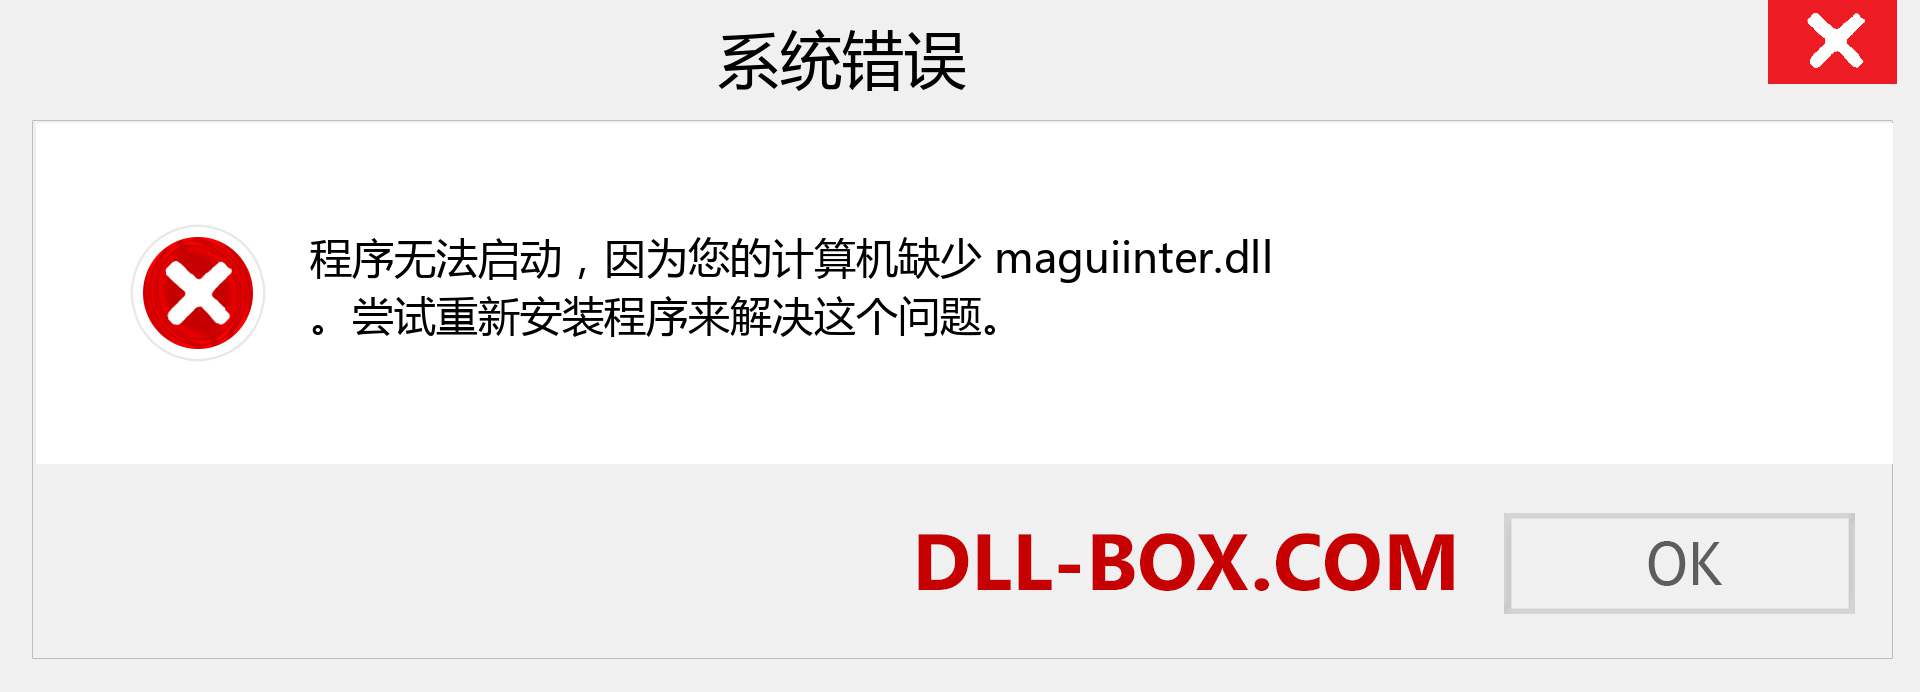 maguiinter.dll 文件丢失？。 适用于 Windows 7、8、10 的下载 - 修复 Windows、照片、图像上的 maguiinter dll 丢失错误